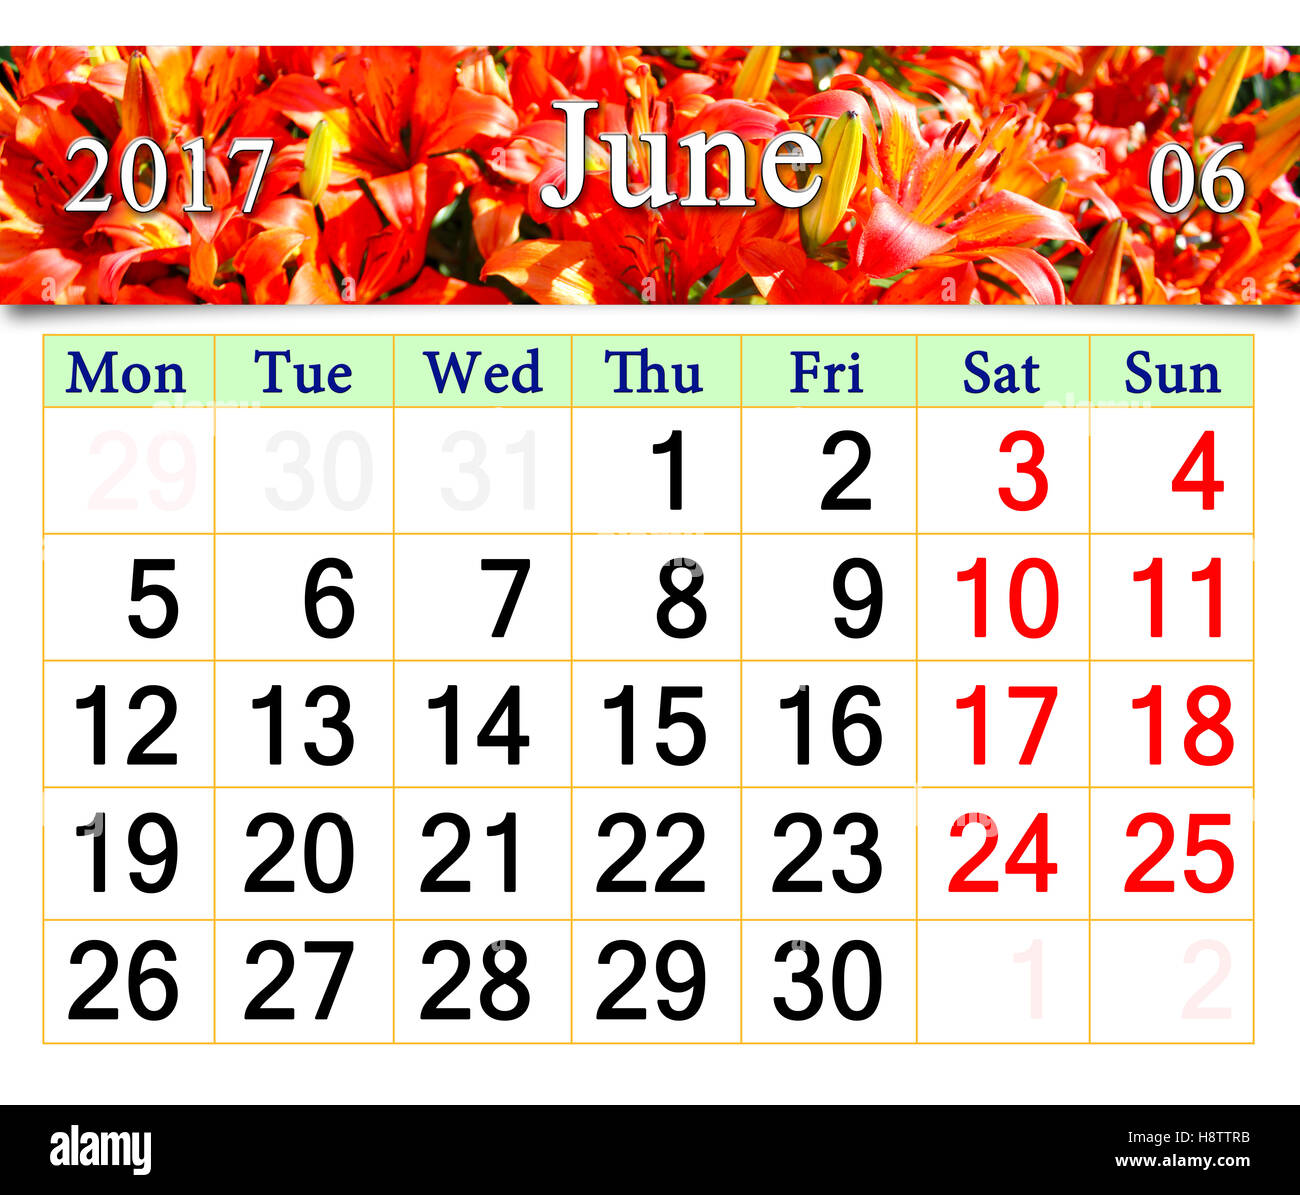 Calendario per il mese di giugno 2017 con immagine di gigli rossi Foto Stock